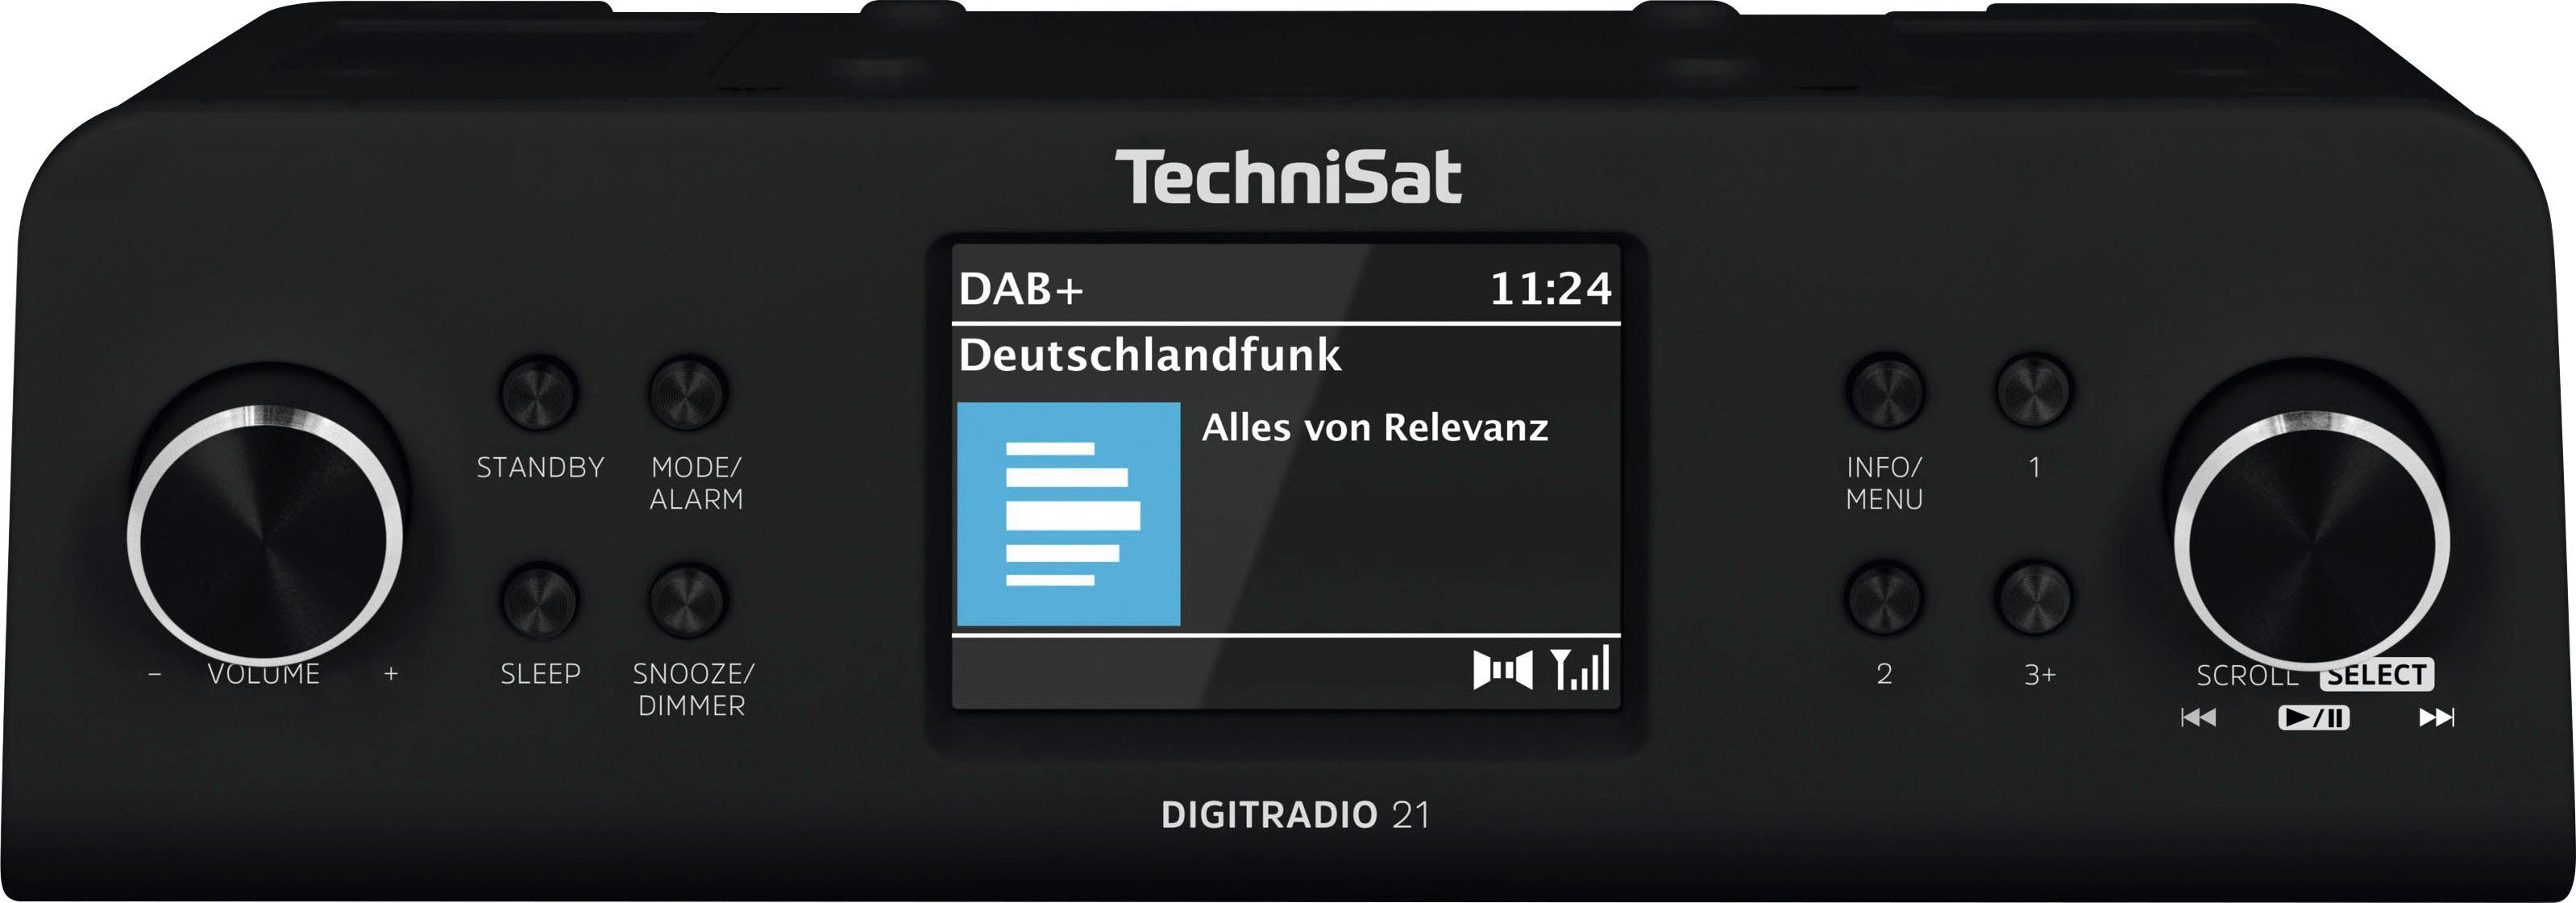 TechniSat Küchenradios online kaufen | OTTO